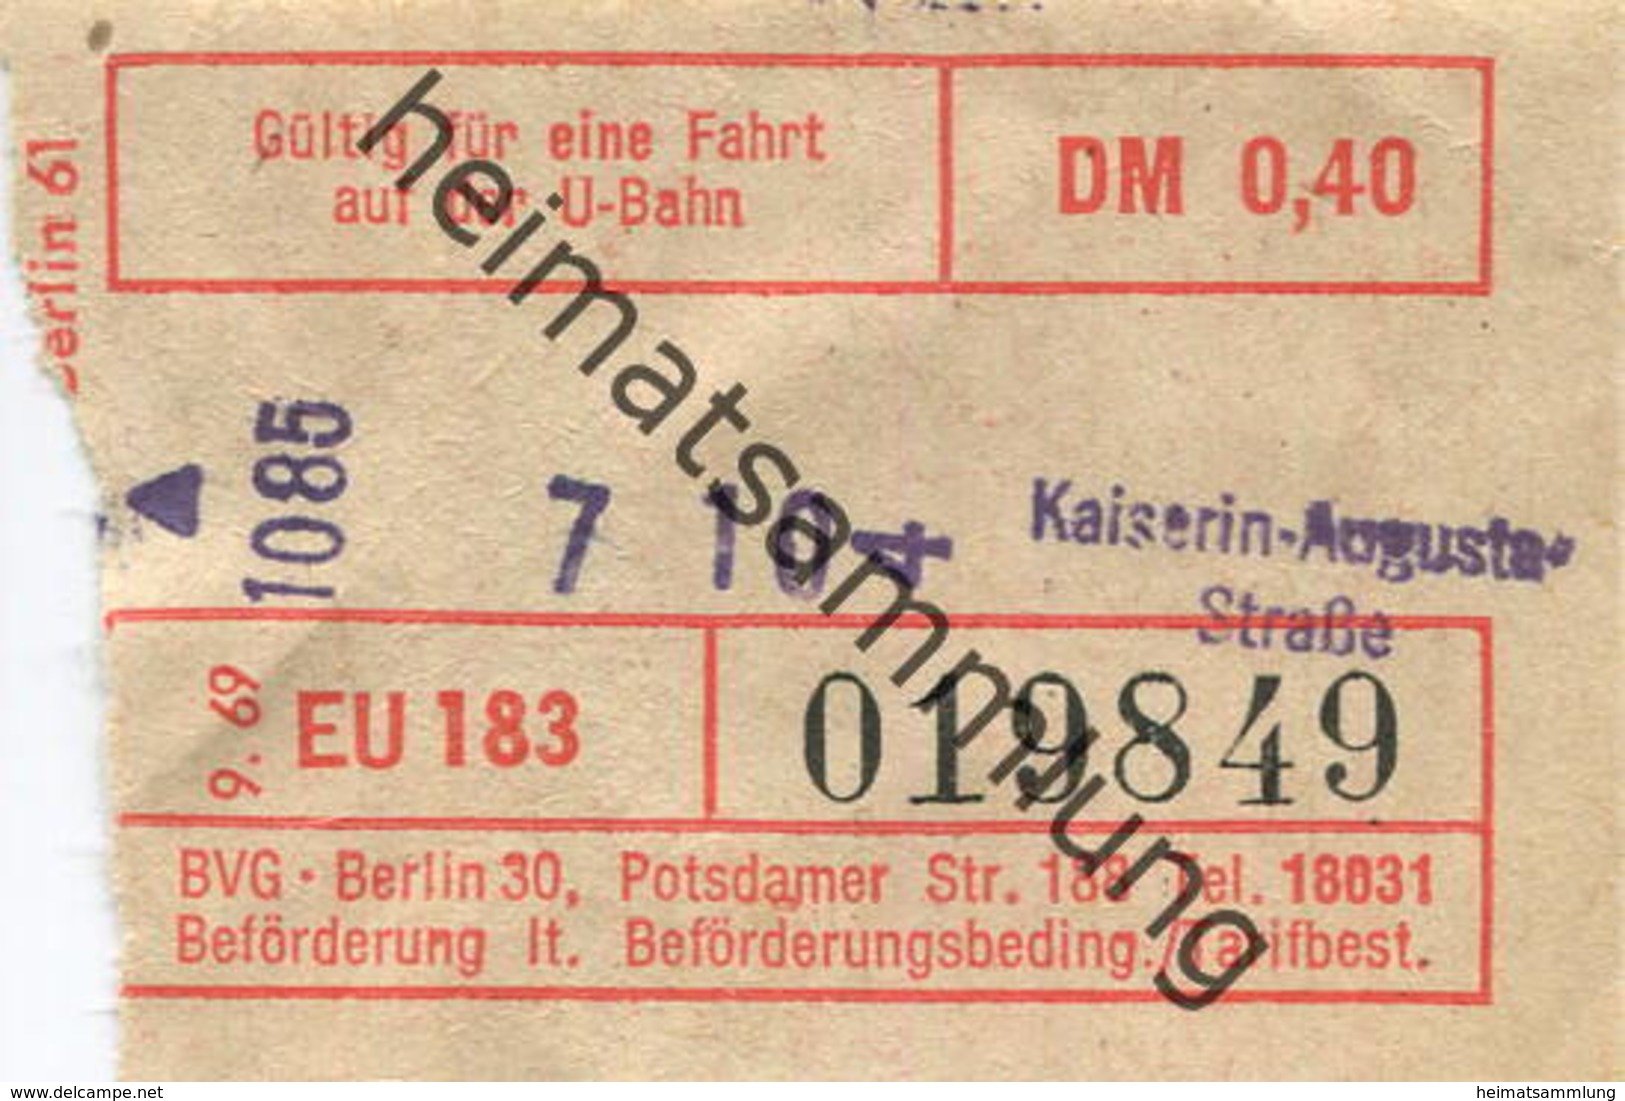 Deutschland - Berlin - U-Bahn Fahrschein BVG-Berlin 1971 - Kaiserin-Augusta-Strasse - Europe